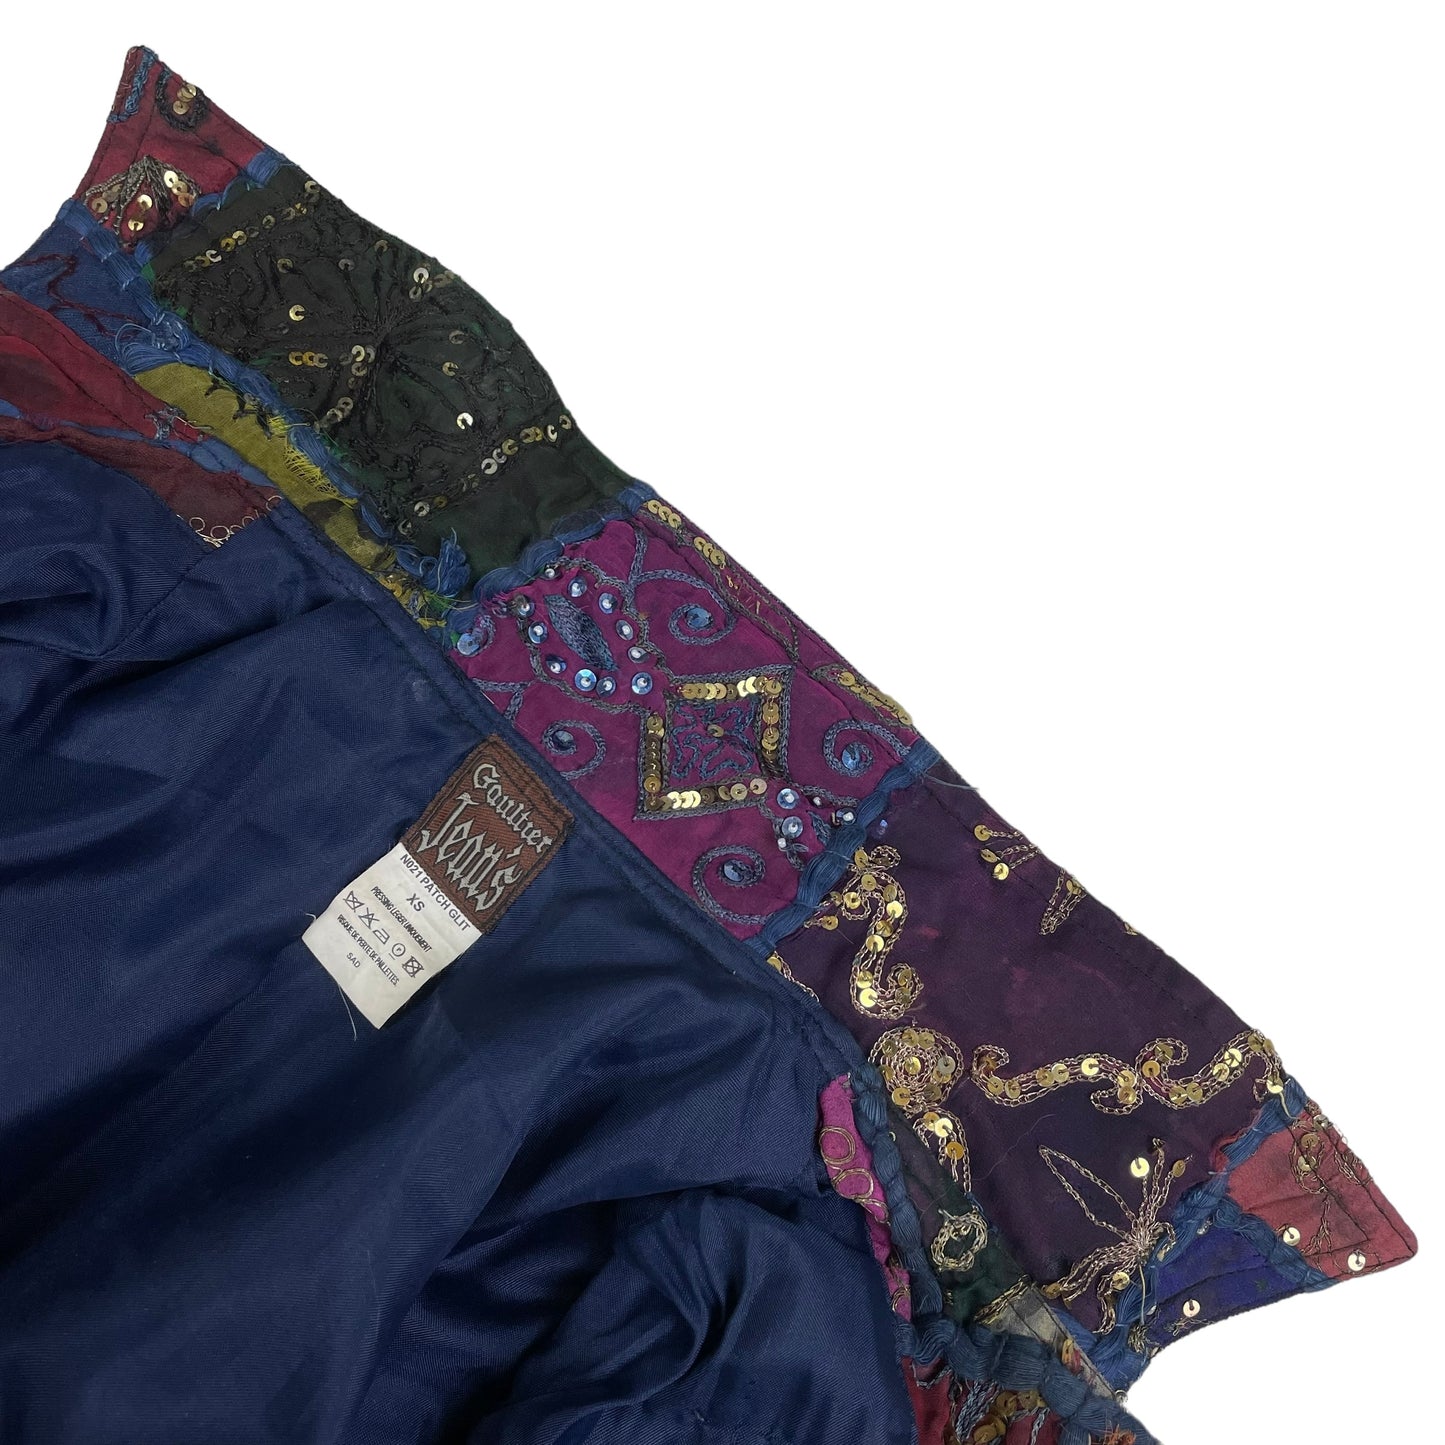 S/S 1999 Jean Paul Gaultier patchwork jacket